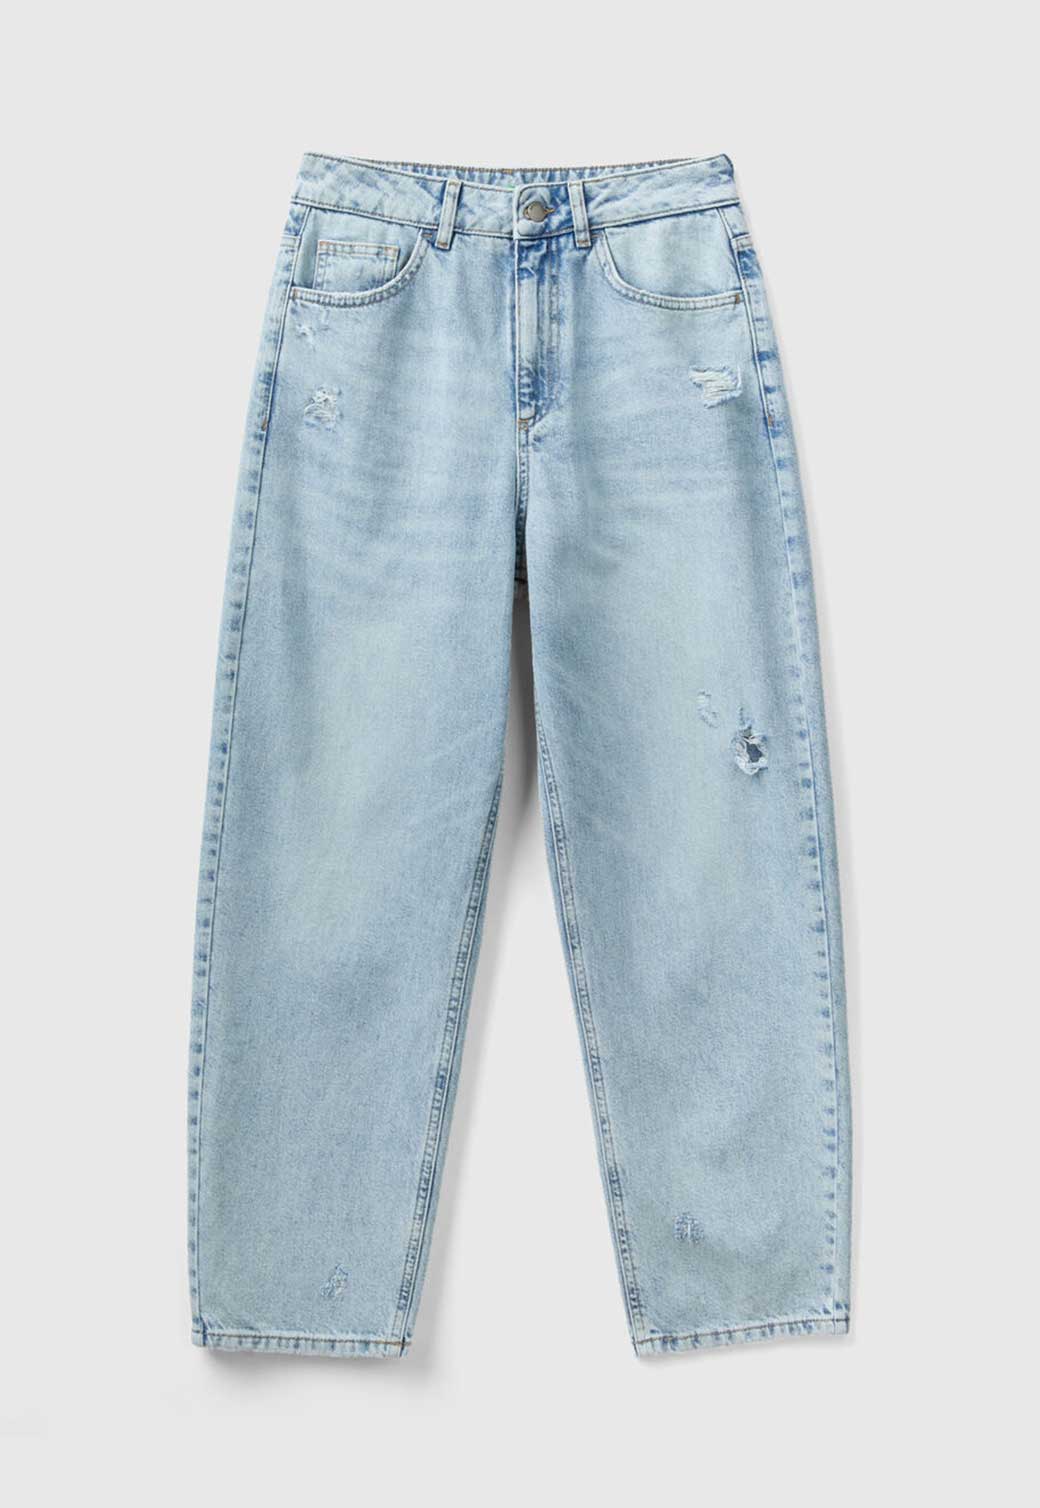 Lavender ג'ינס ארוך לנשים BENETTON